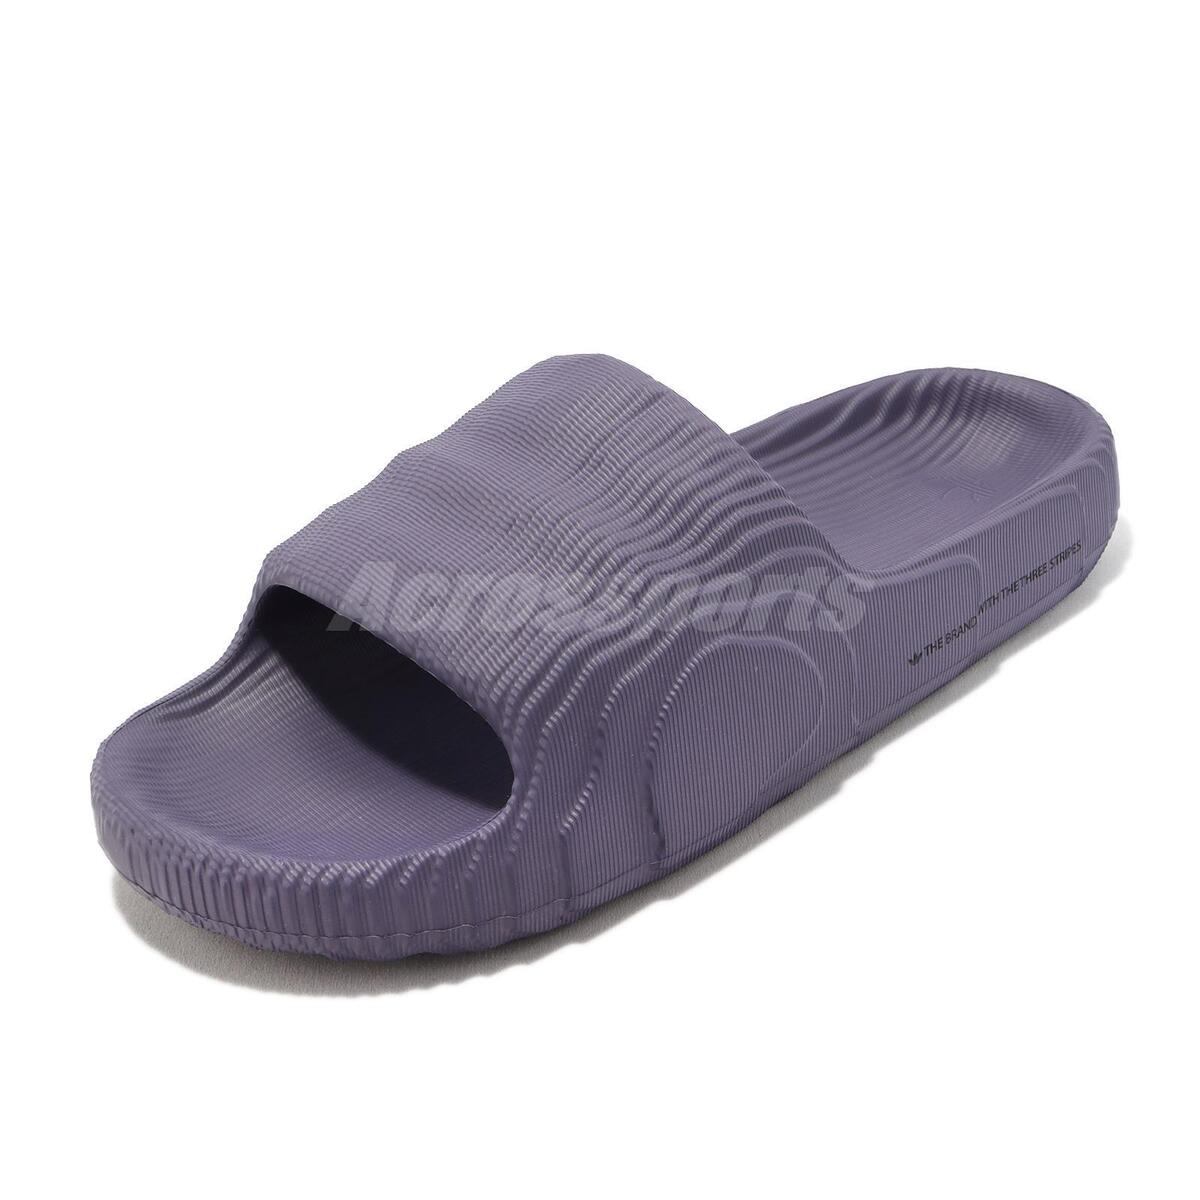 Adidas Adilette 22 Purple